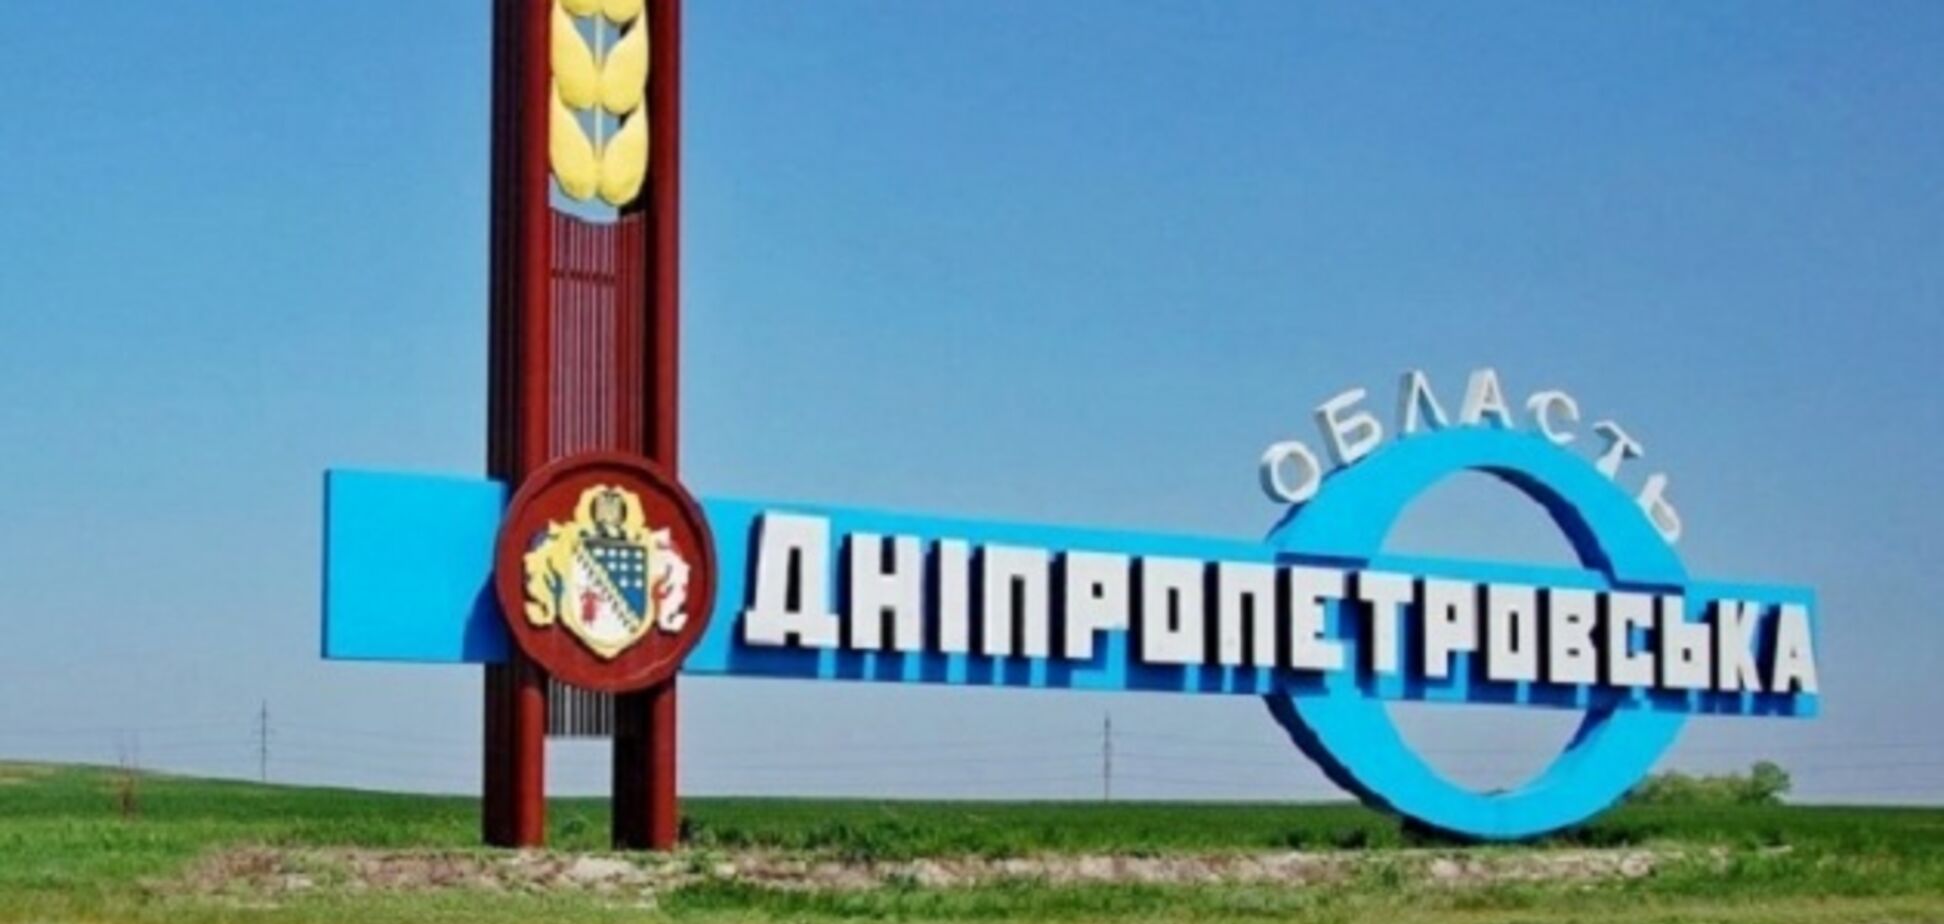 Порошенко предложил новое название для Днепропетровской области